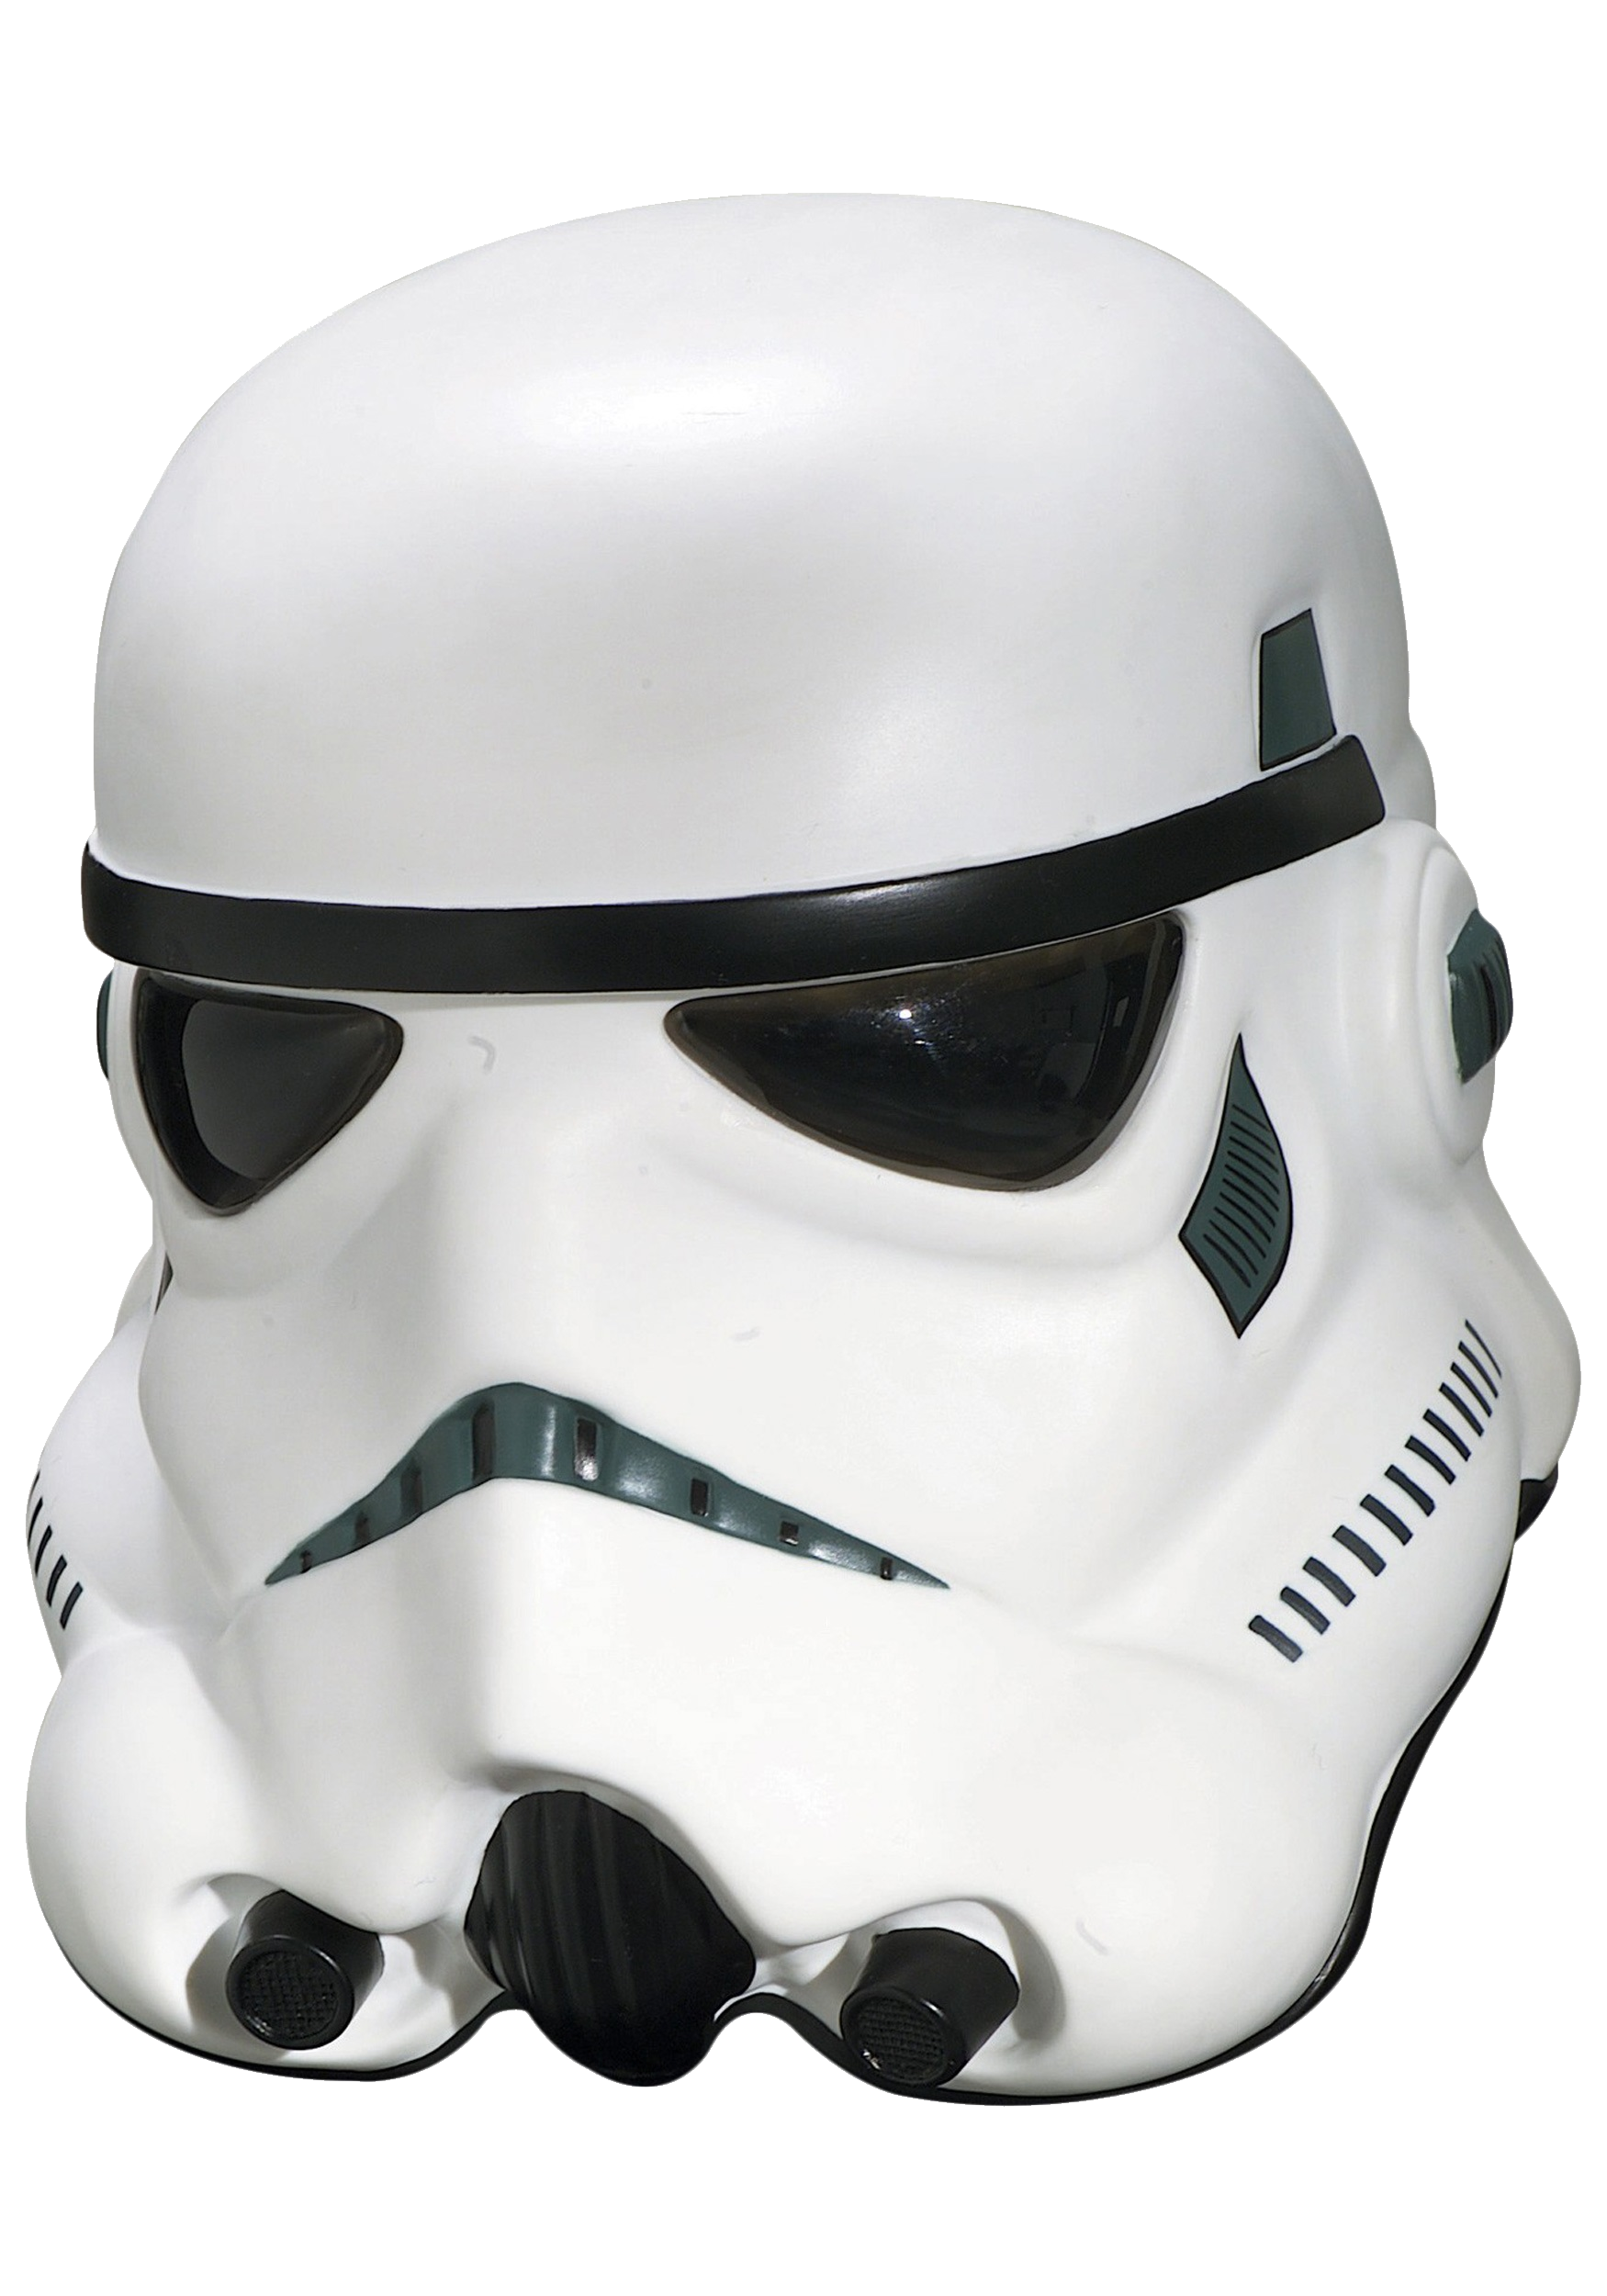 Download PNG image - Stormtrooper Mask PNG Transparent Image 